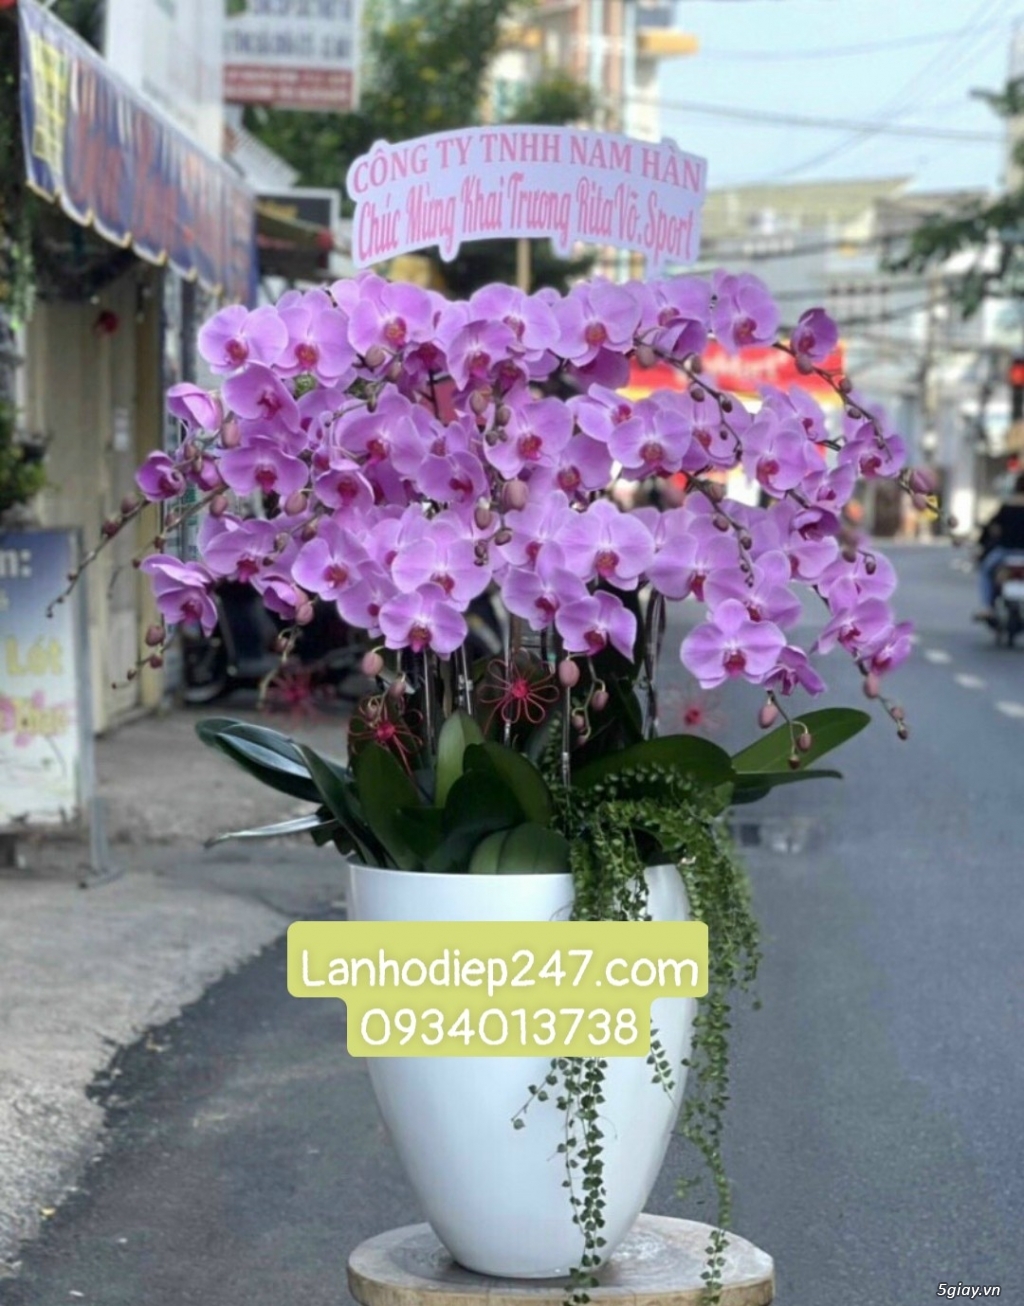 Shop hoa tươi Lan Hồ Điệp 247 tại Phú Nhuận 0934013738 - 14